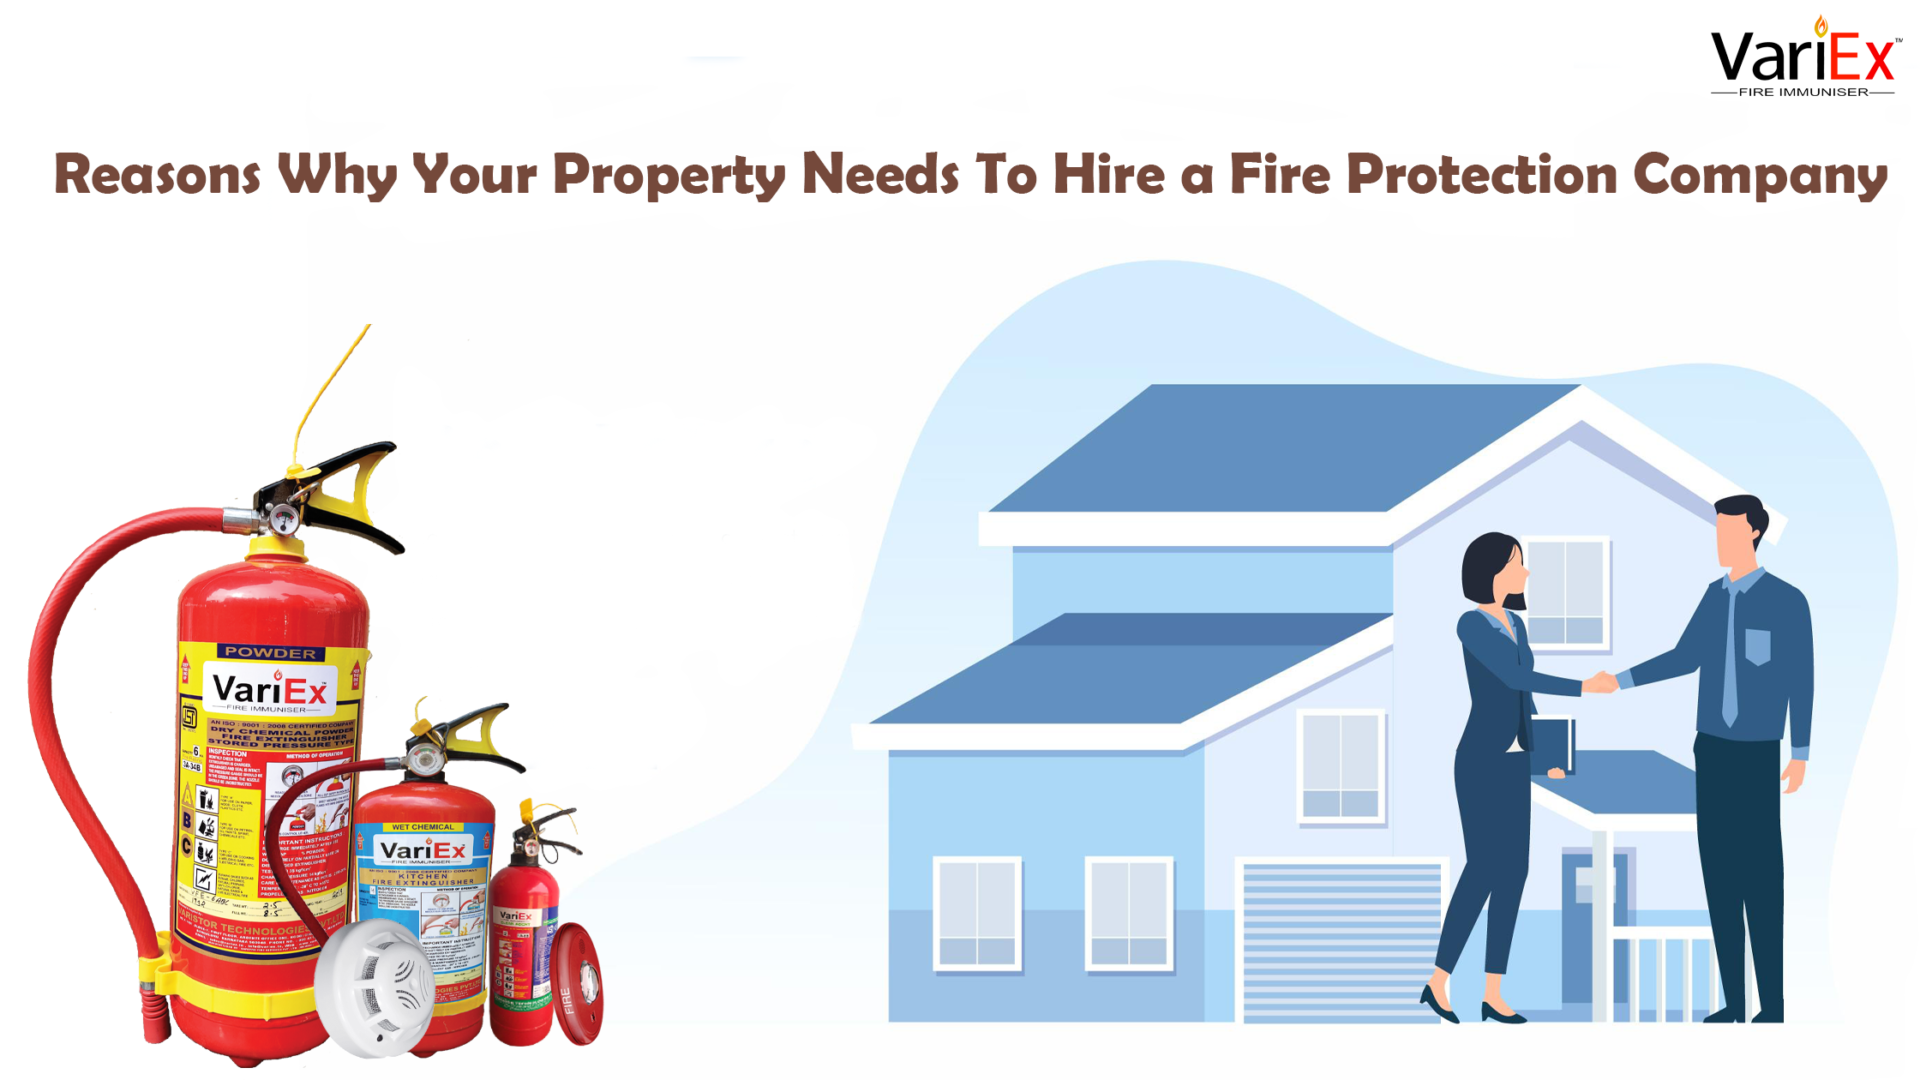 Razones por las que su propiedad necesita contratar una empresa de protección contra incendios 2